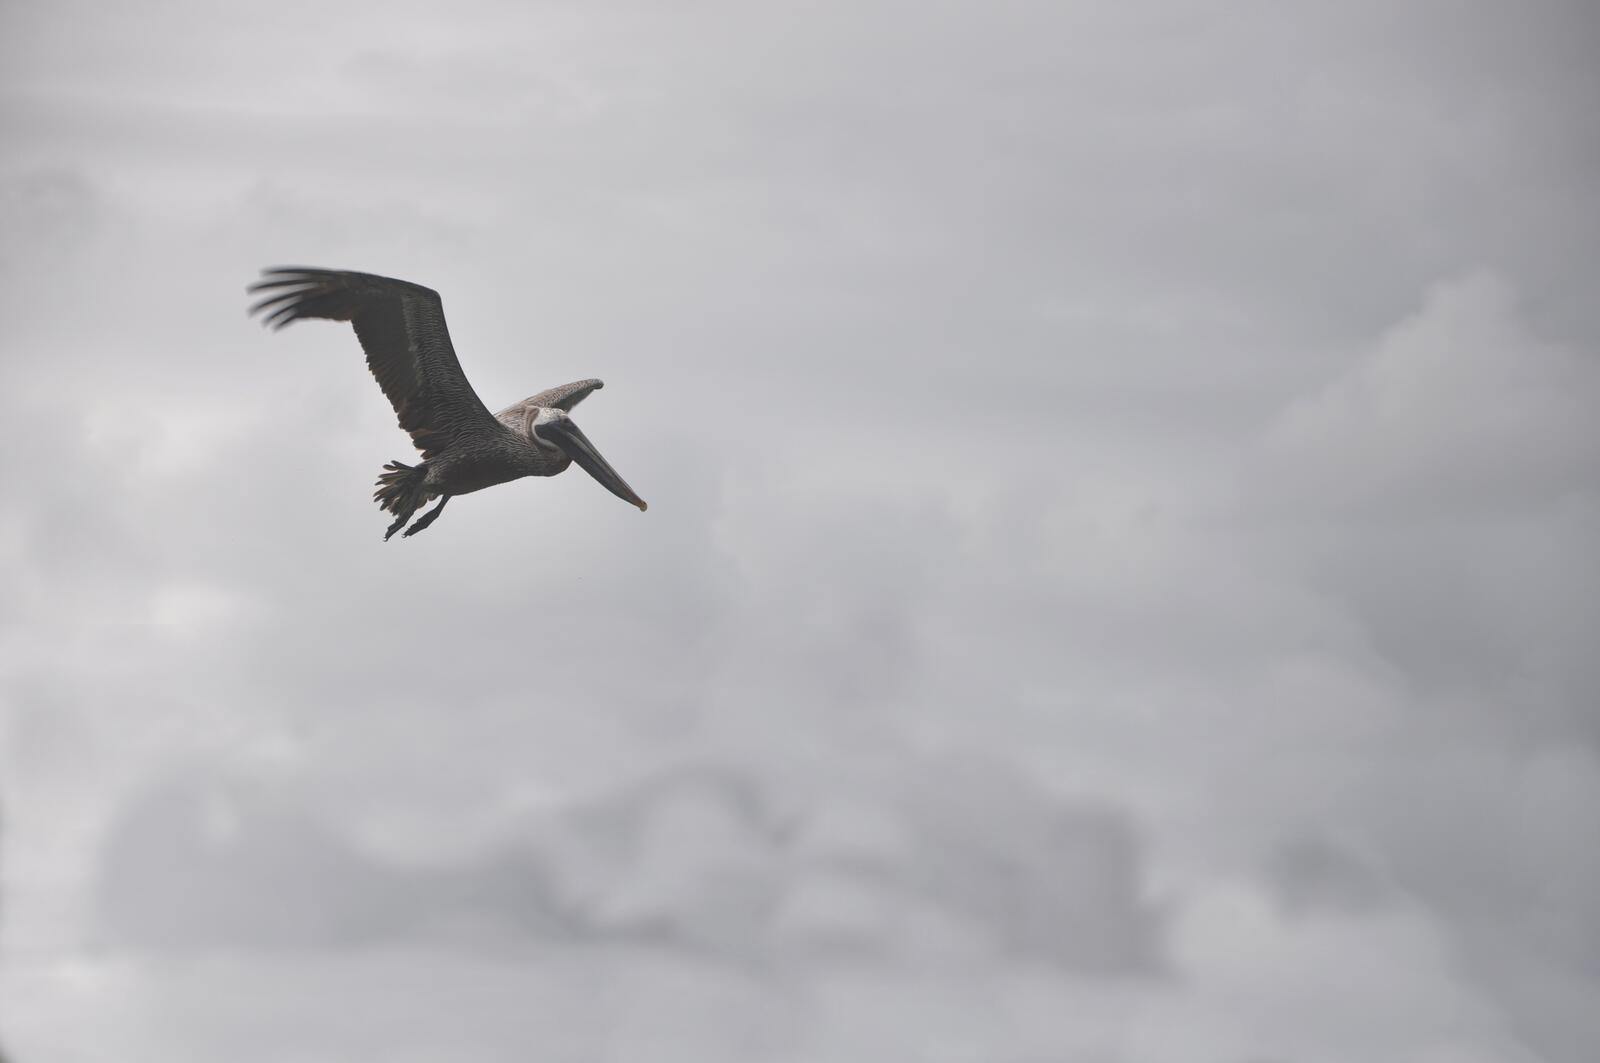 免费照片一张鹈鹕飞行的灰色照片。